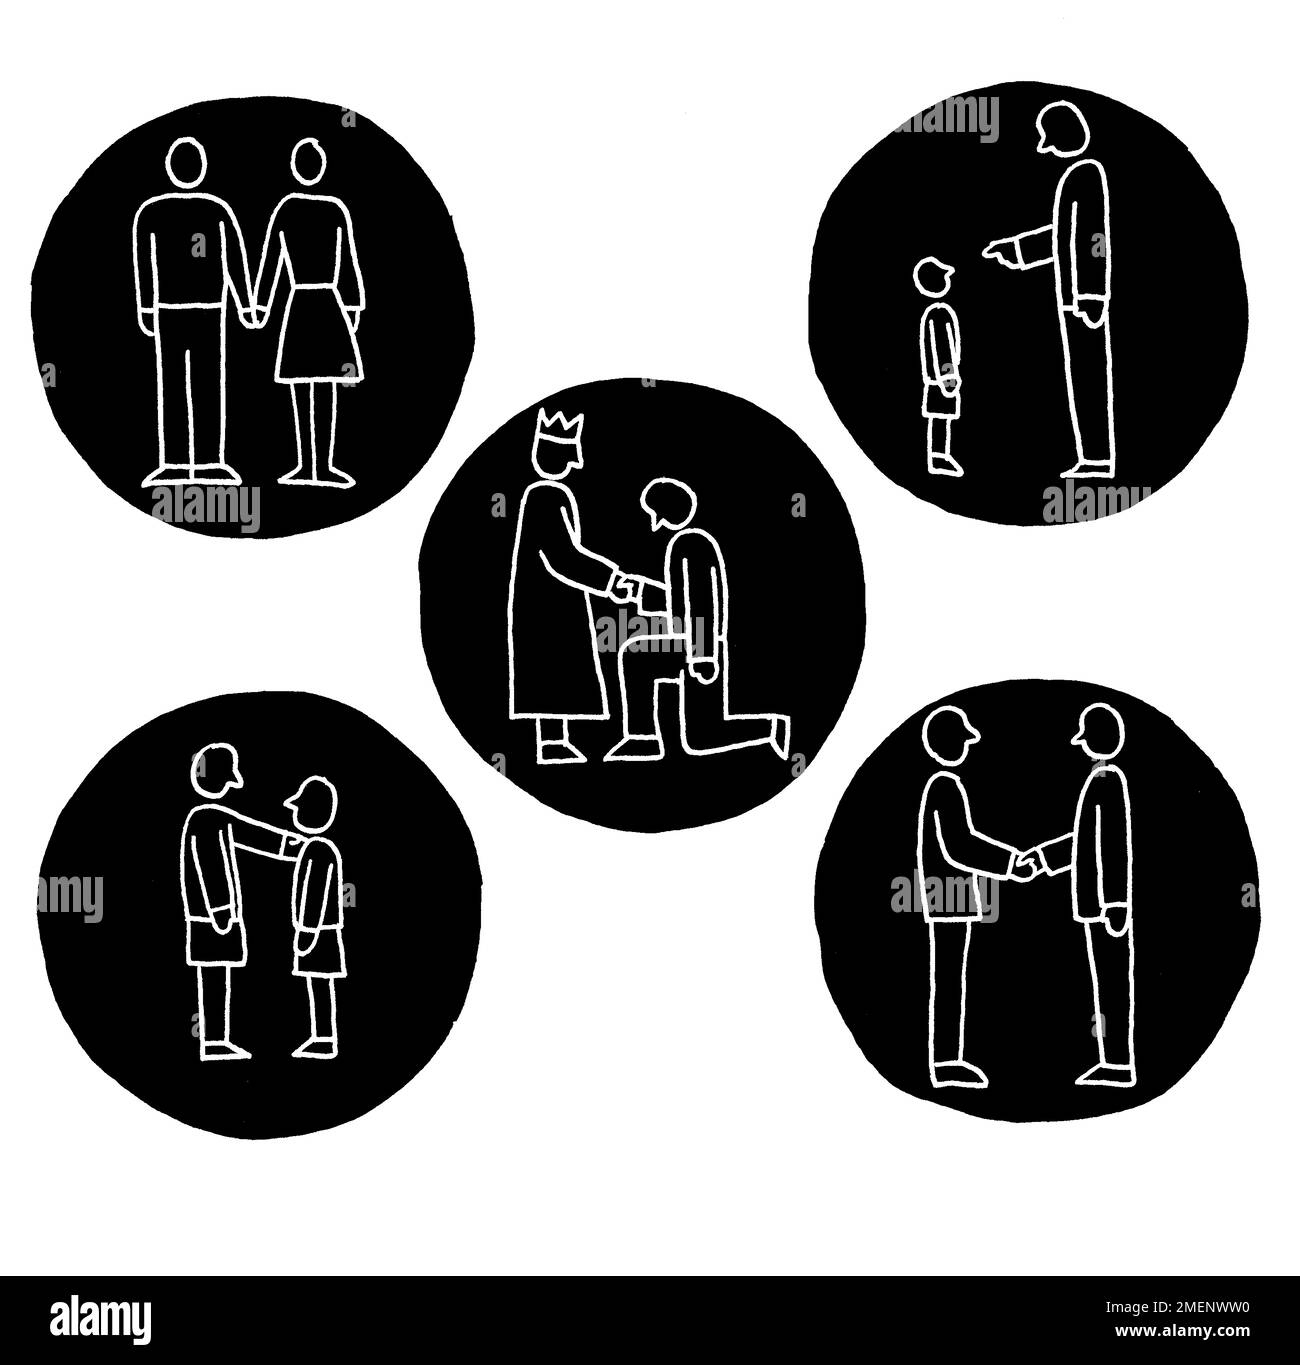 Schwarz-Weiß-Darstellung von Beziehungen und Kommunikation, die die Überzeugung von Konfuzius illustriert, dass Menschen gut sein werden, wenn man gute Absichten hat Stockfoto